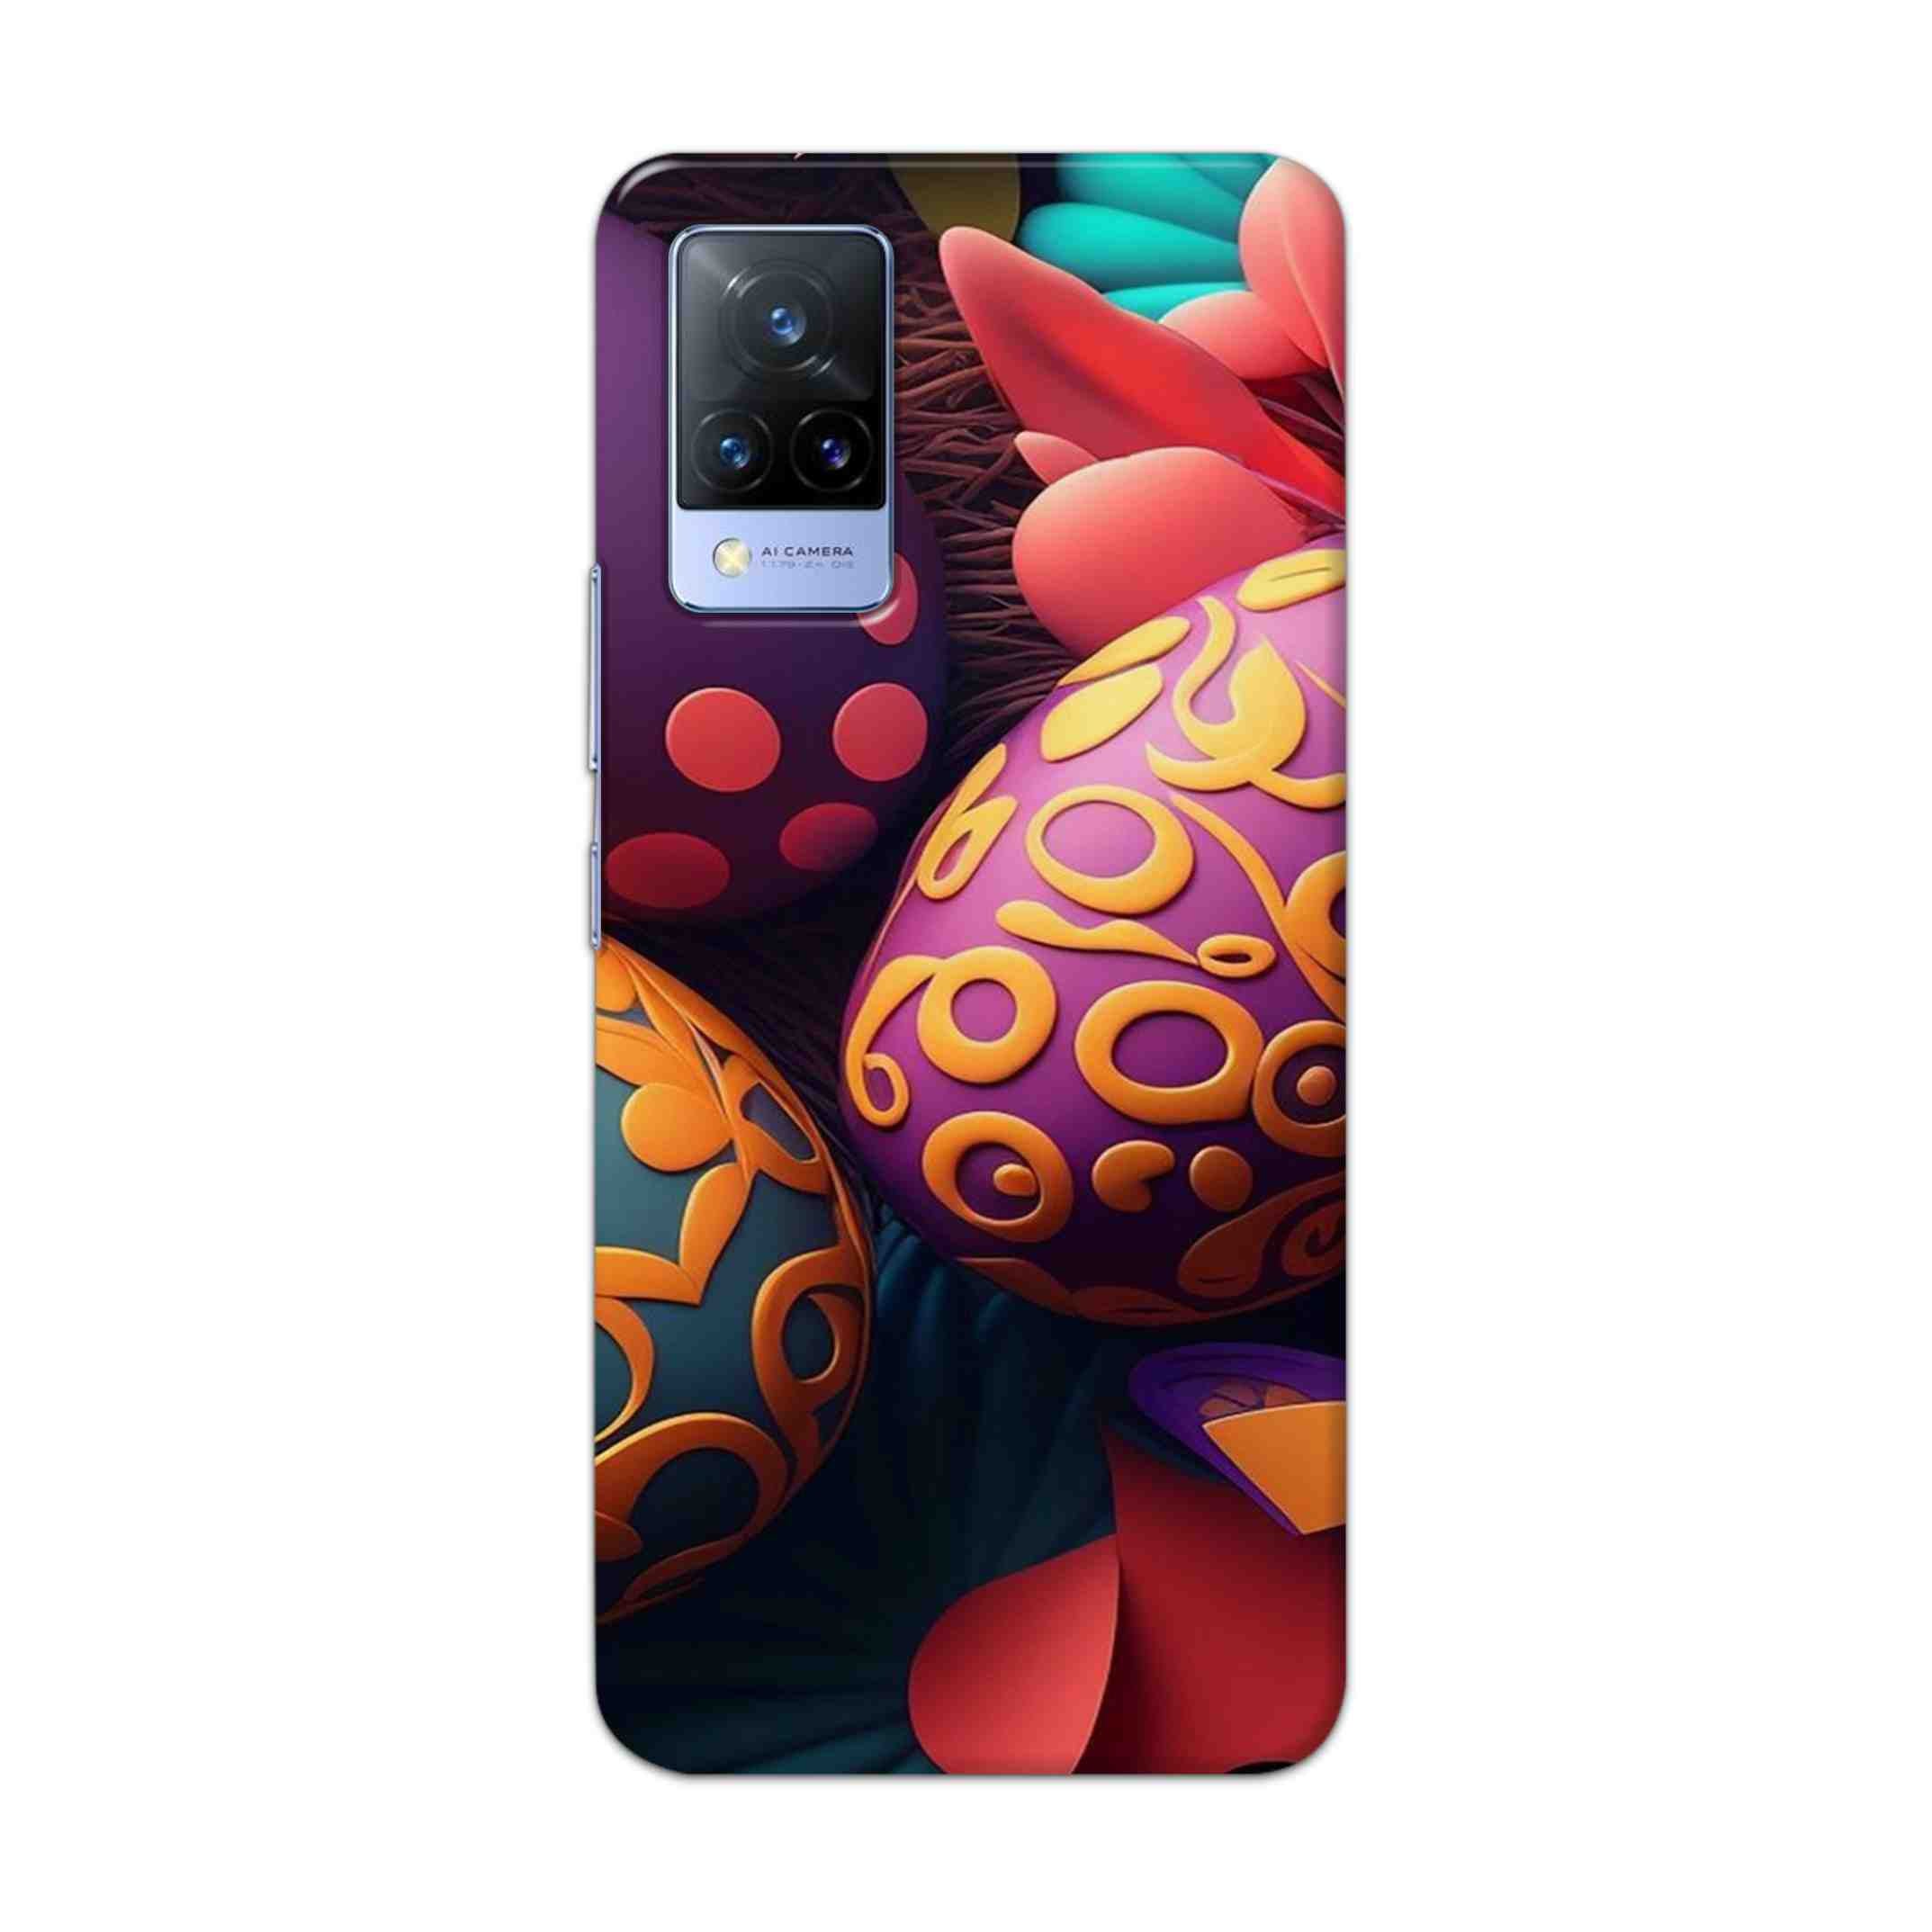 Buy Easter Egg Hard Back Mobile Phone Case Cover For Vivo V21 Online